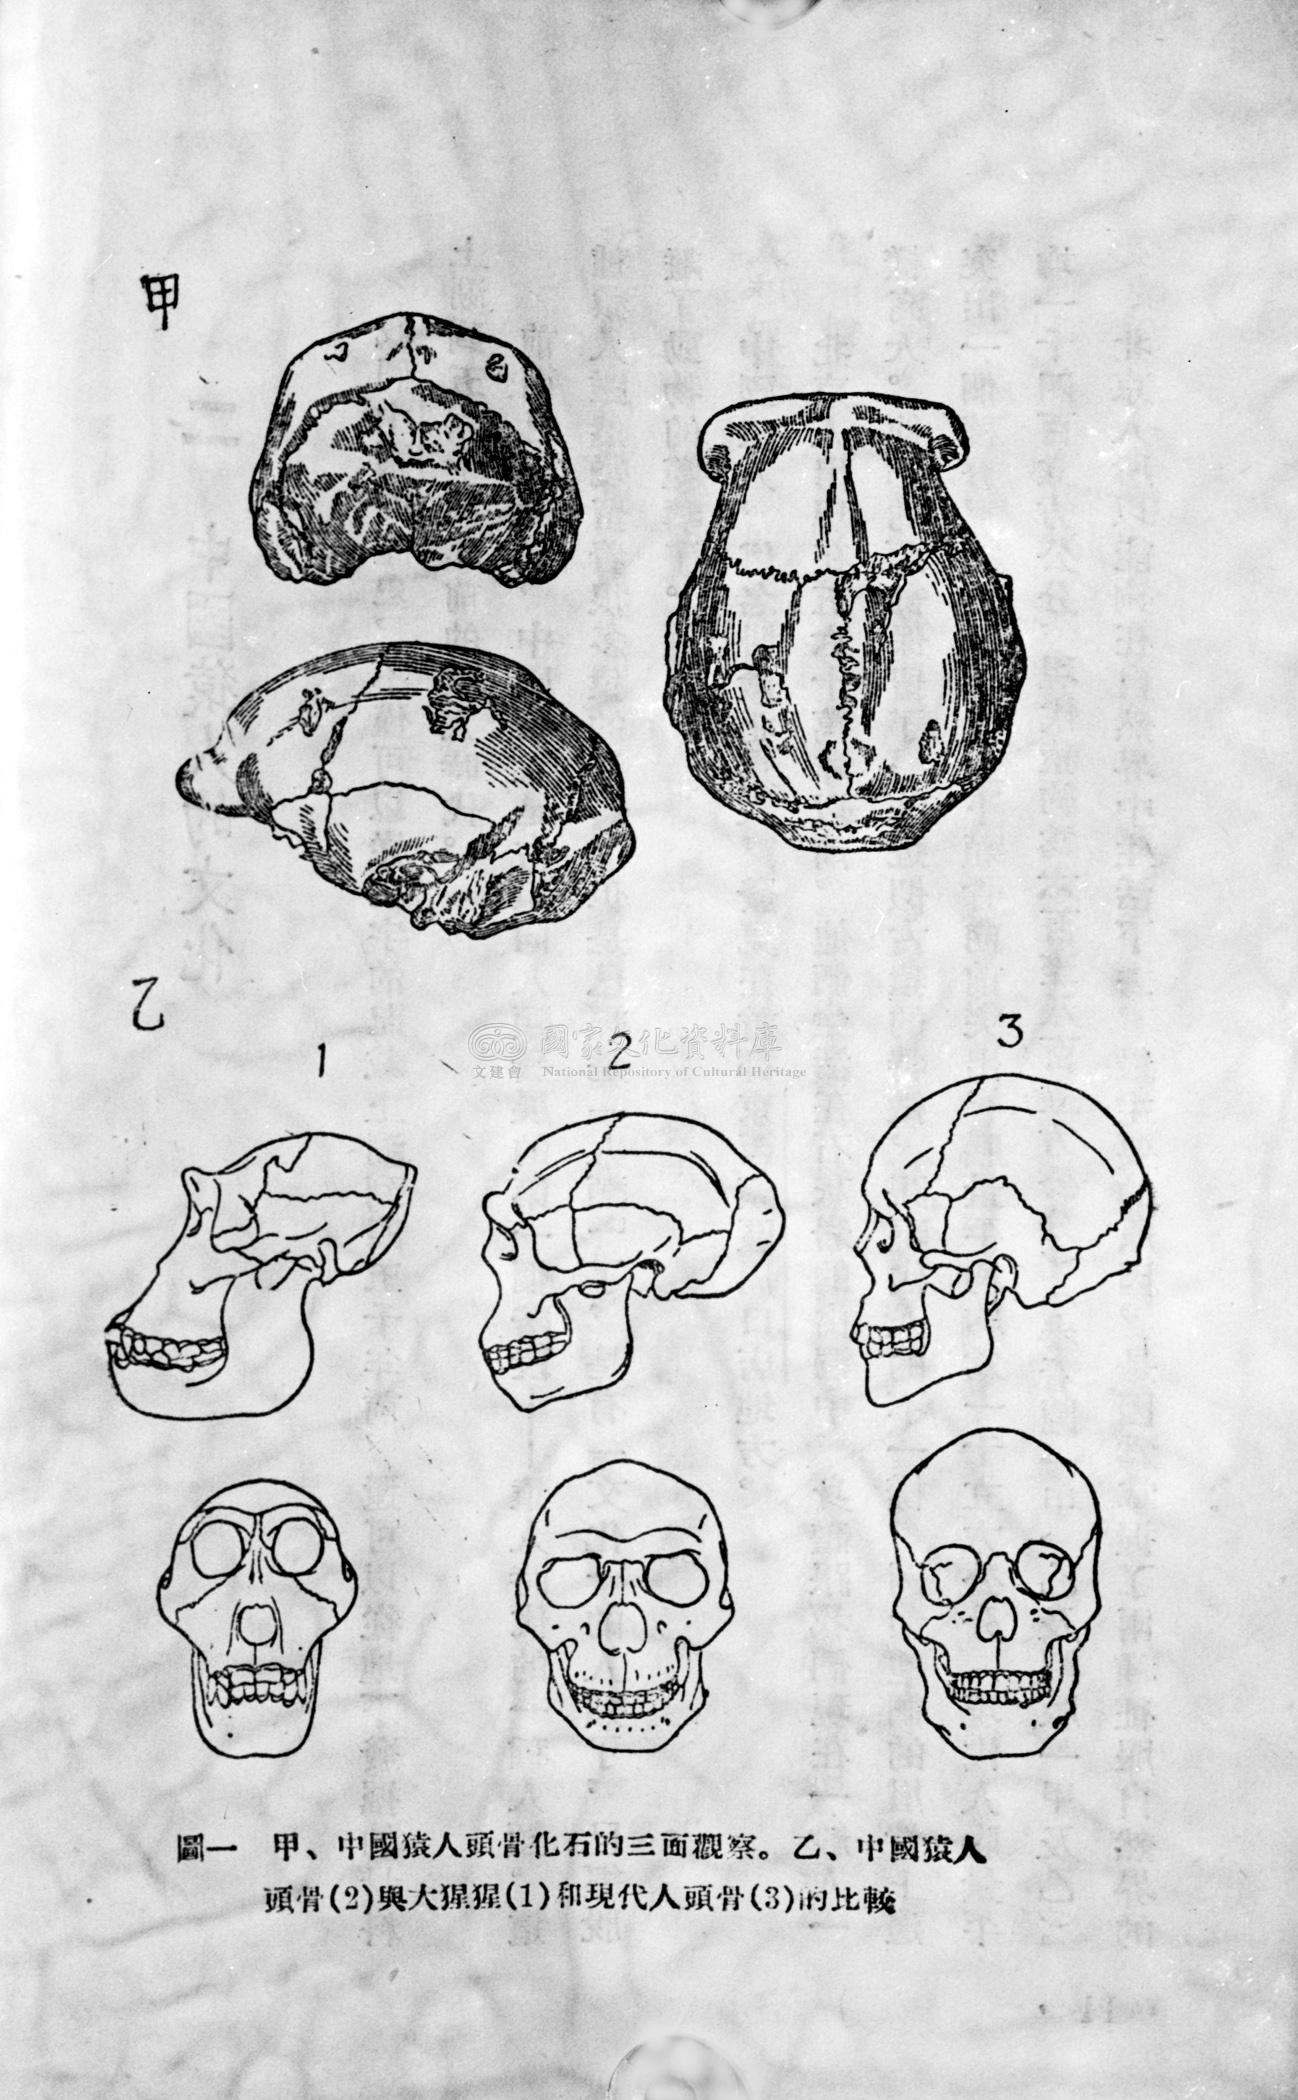 中國猿人頭骨化石的觀察